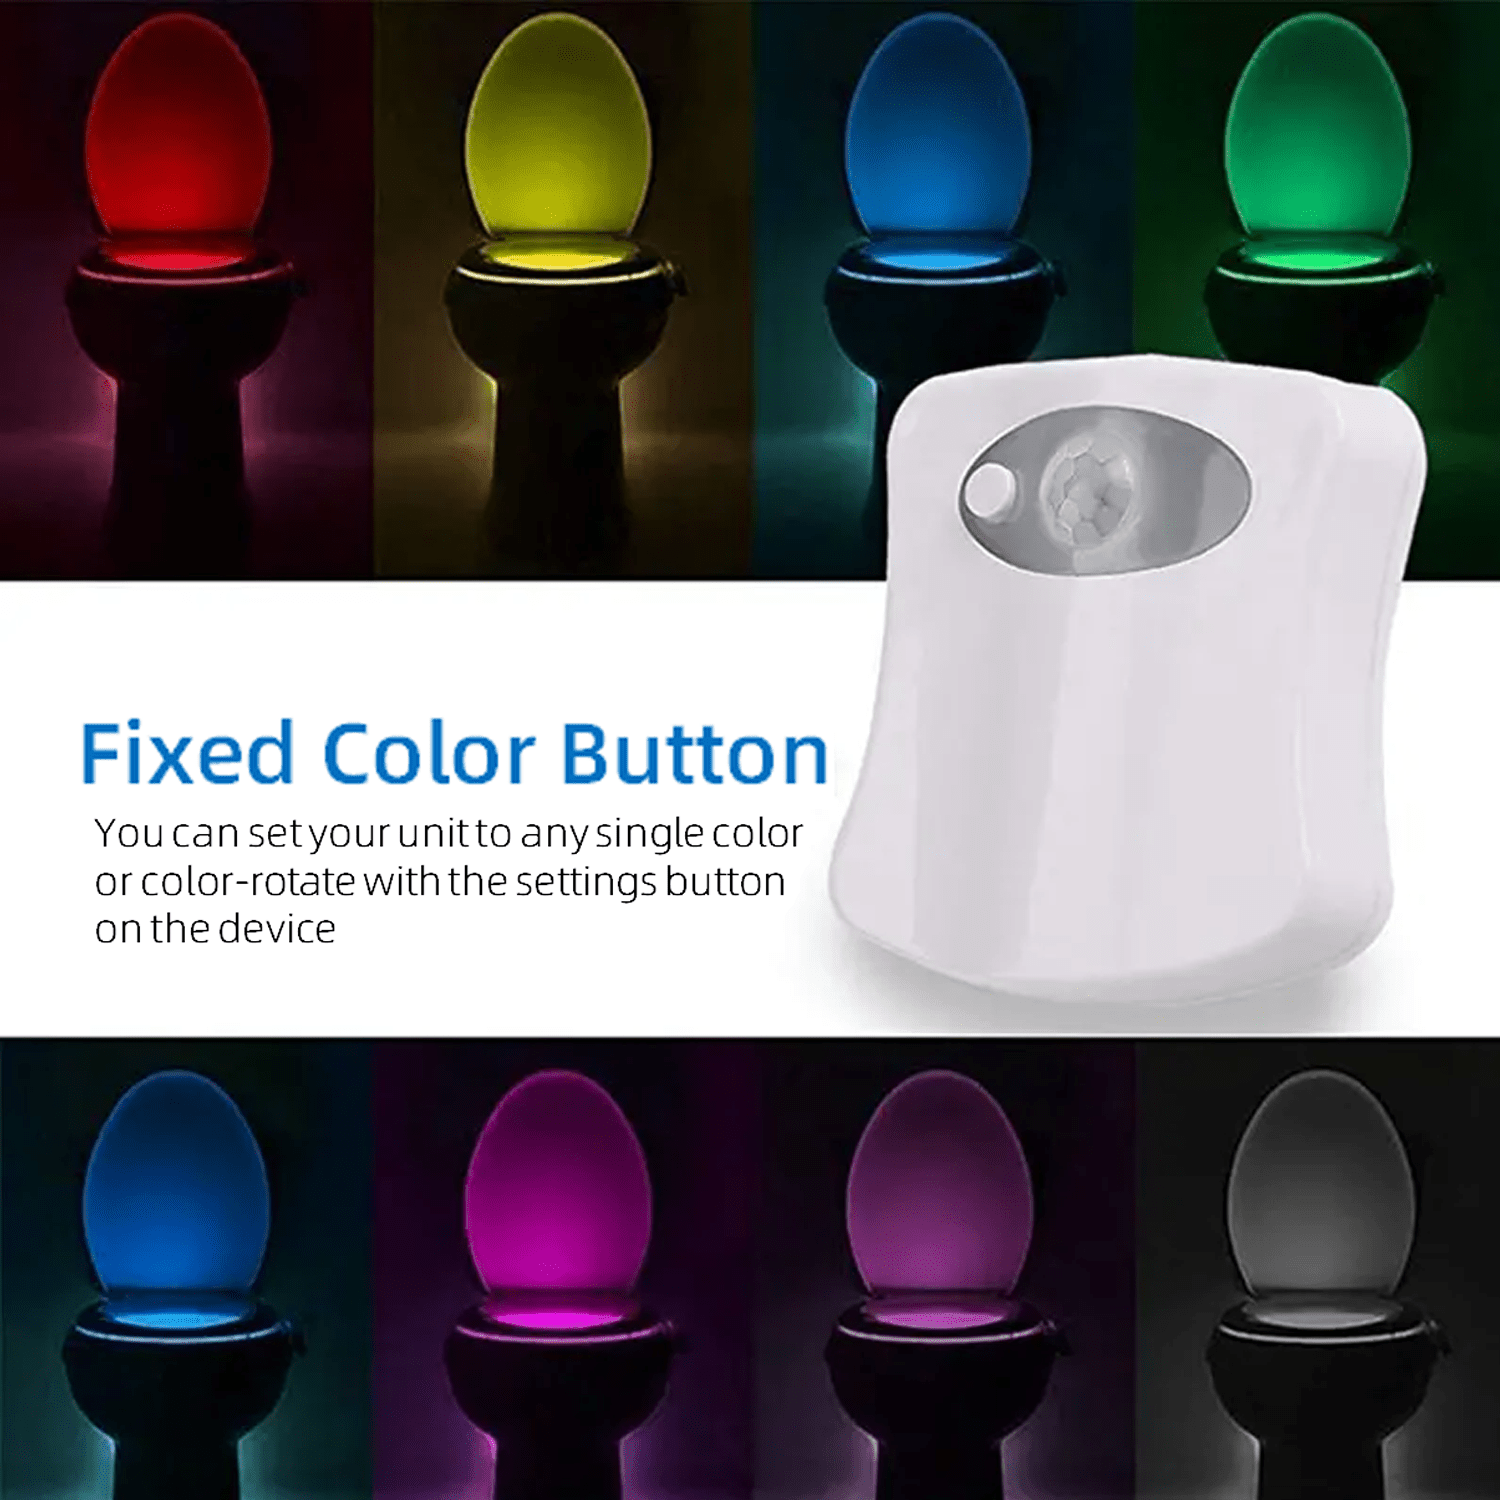 Smart Toilet Night Light, 16-color Motion Sensor Led Bowl Night